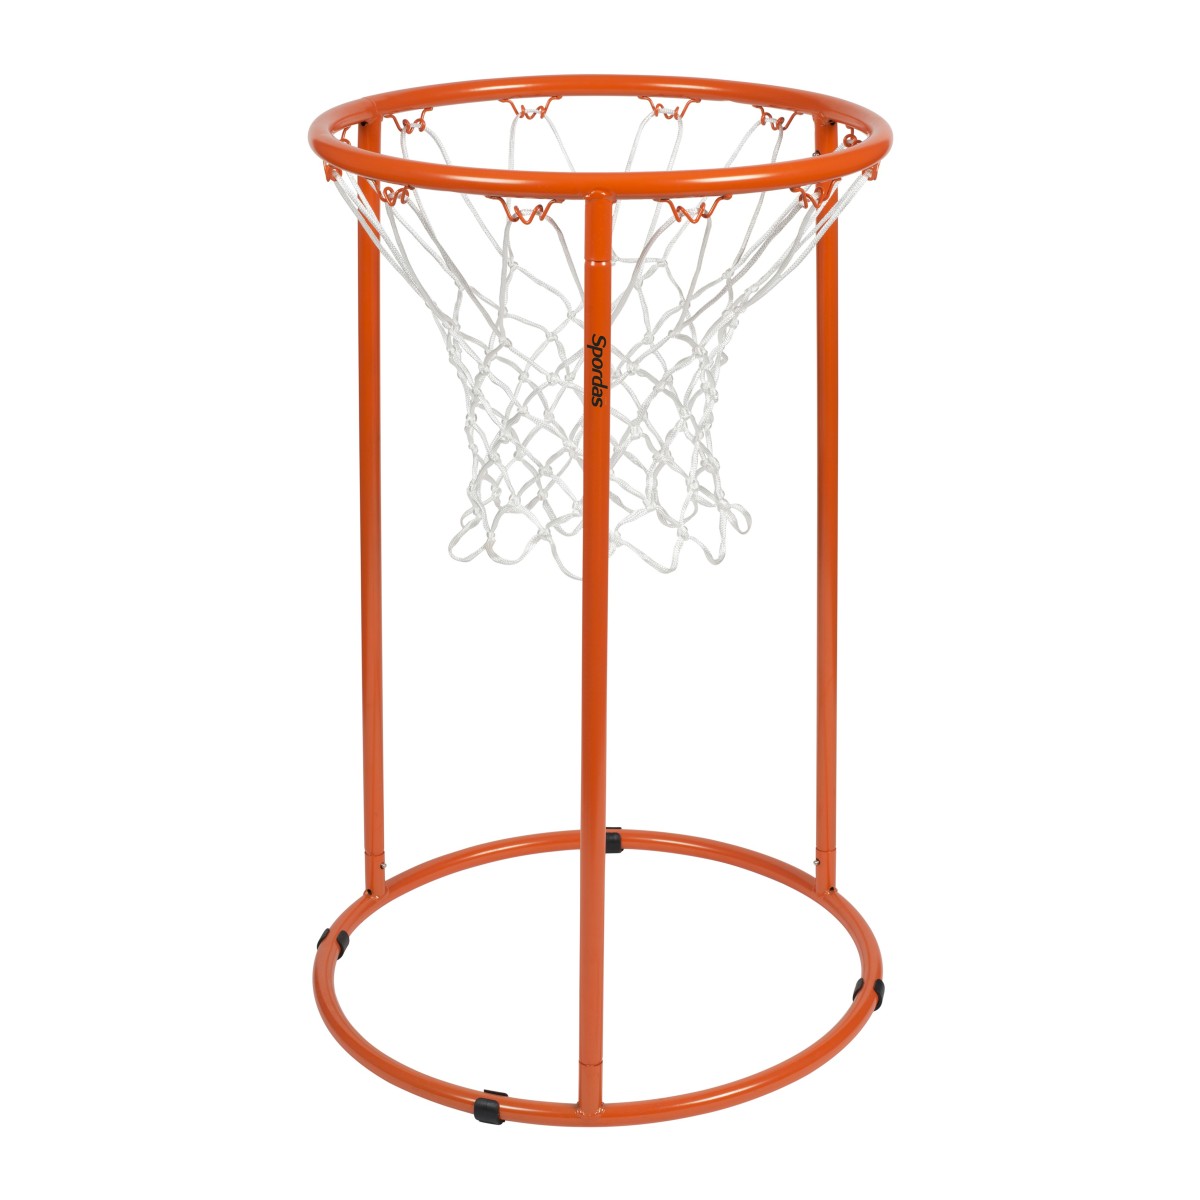 Basket : un bon sport collectif pour les enfants ?